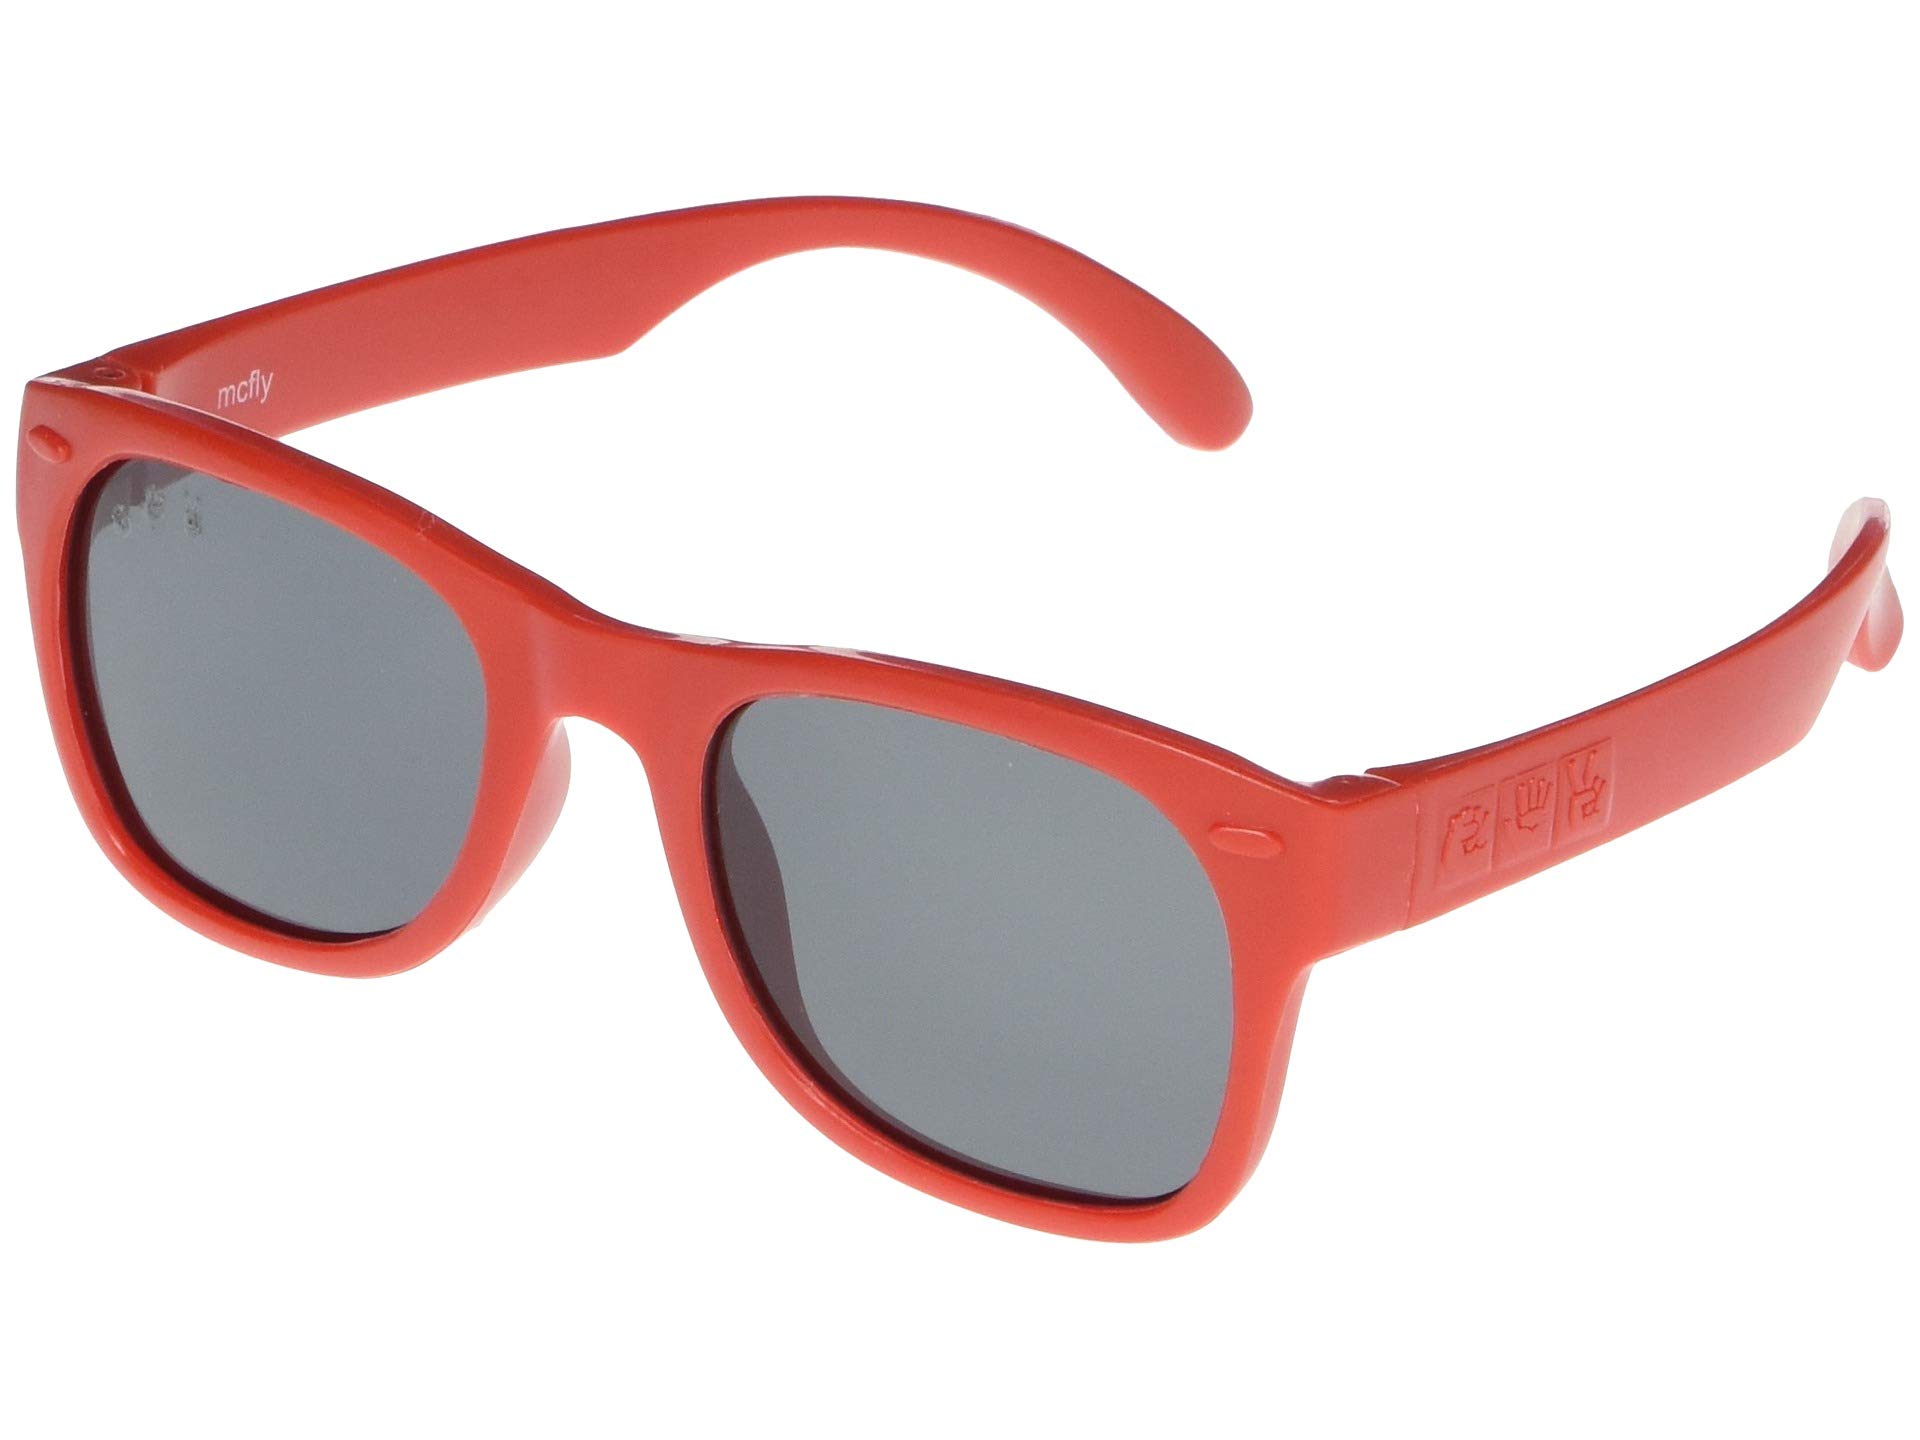 Красные гибкие солнцезащитные очки (детские) Ro.sham.bo baby